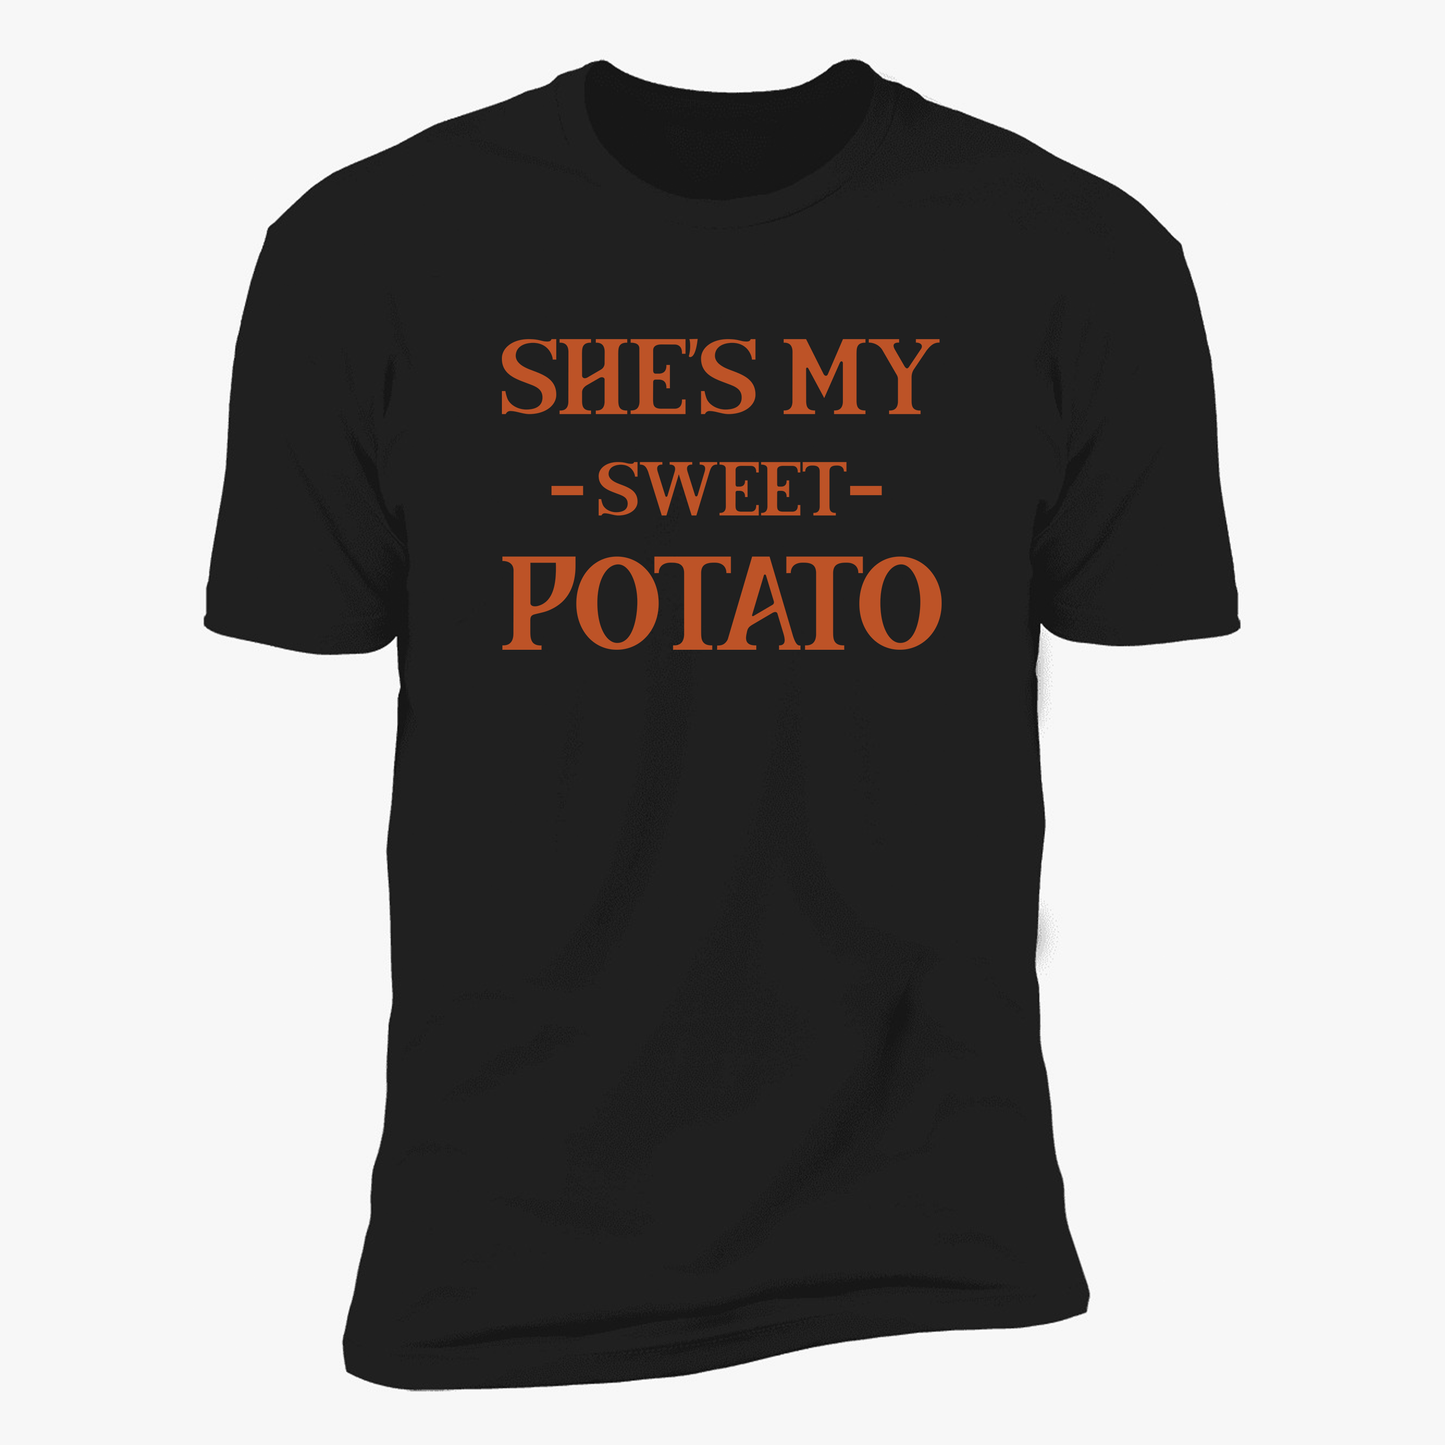 She's My Sweet Potato | I Yam